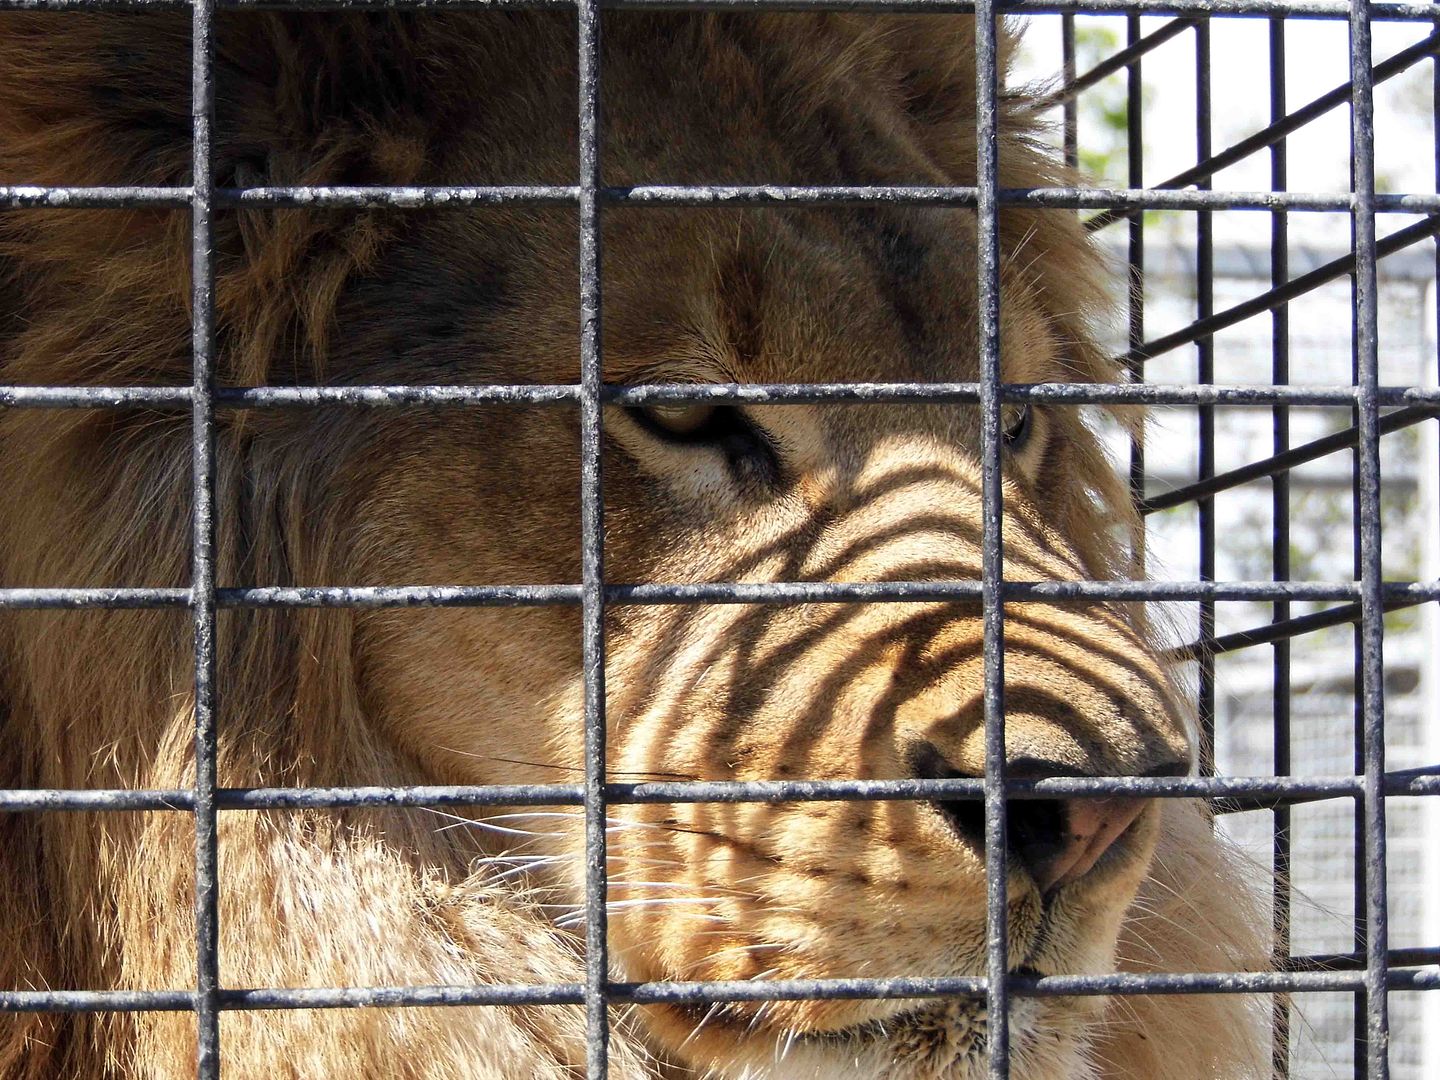 Animals in cages essay